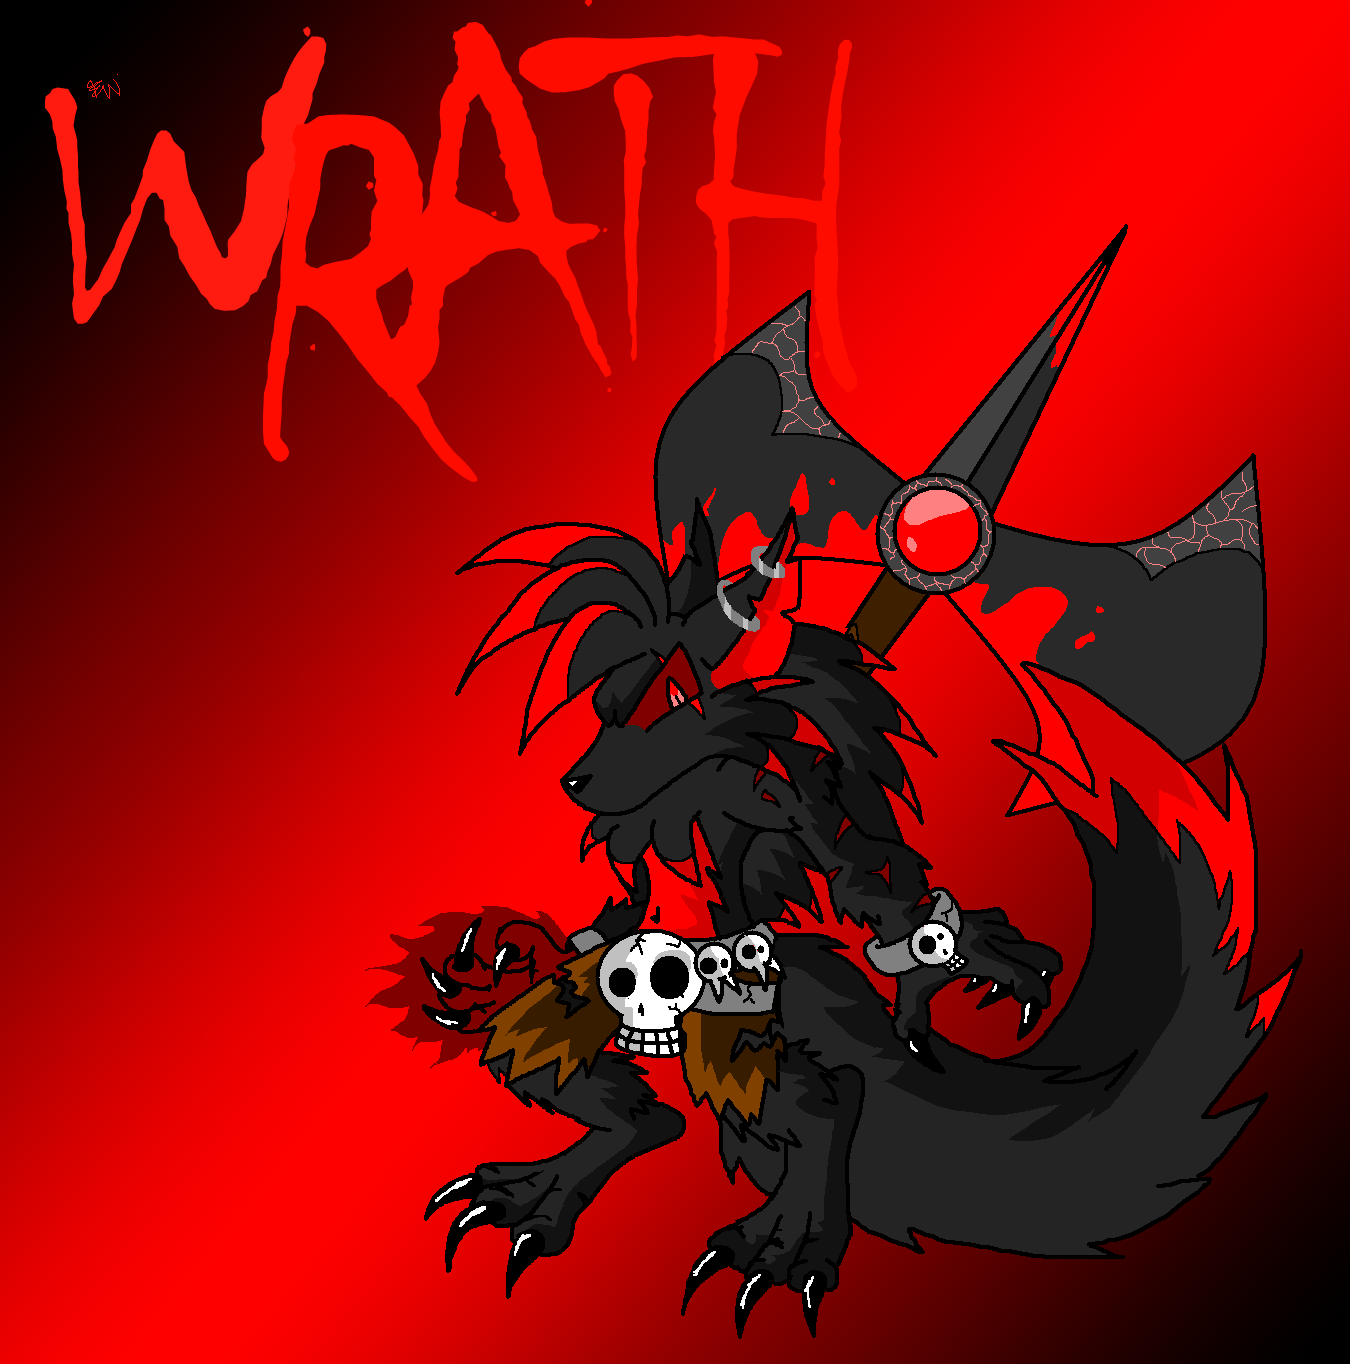 Werewolf Wrath by Edge14